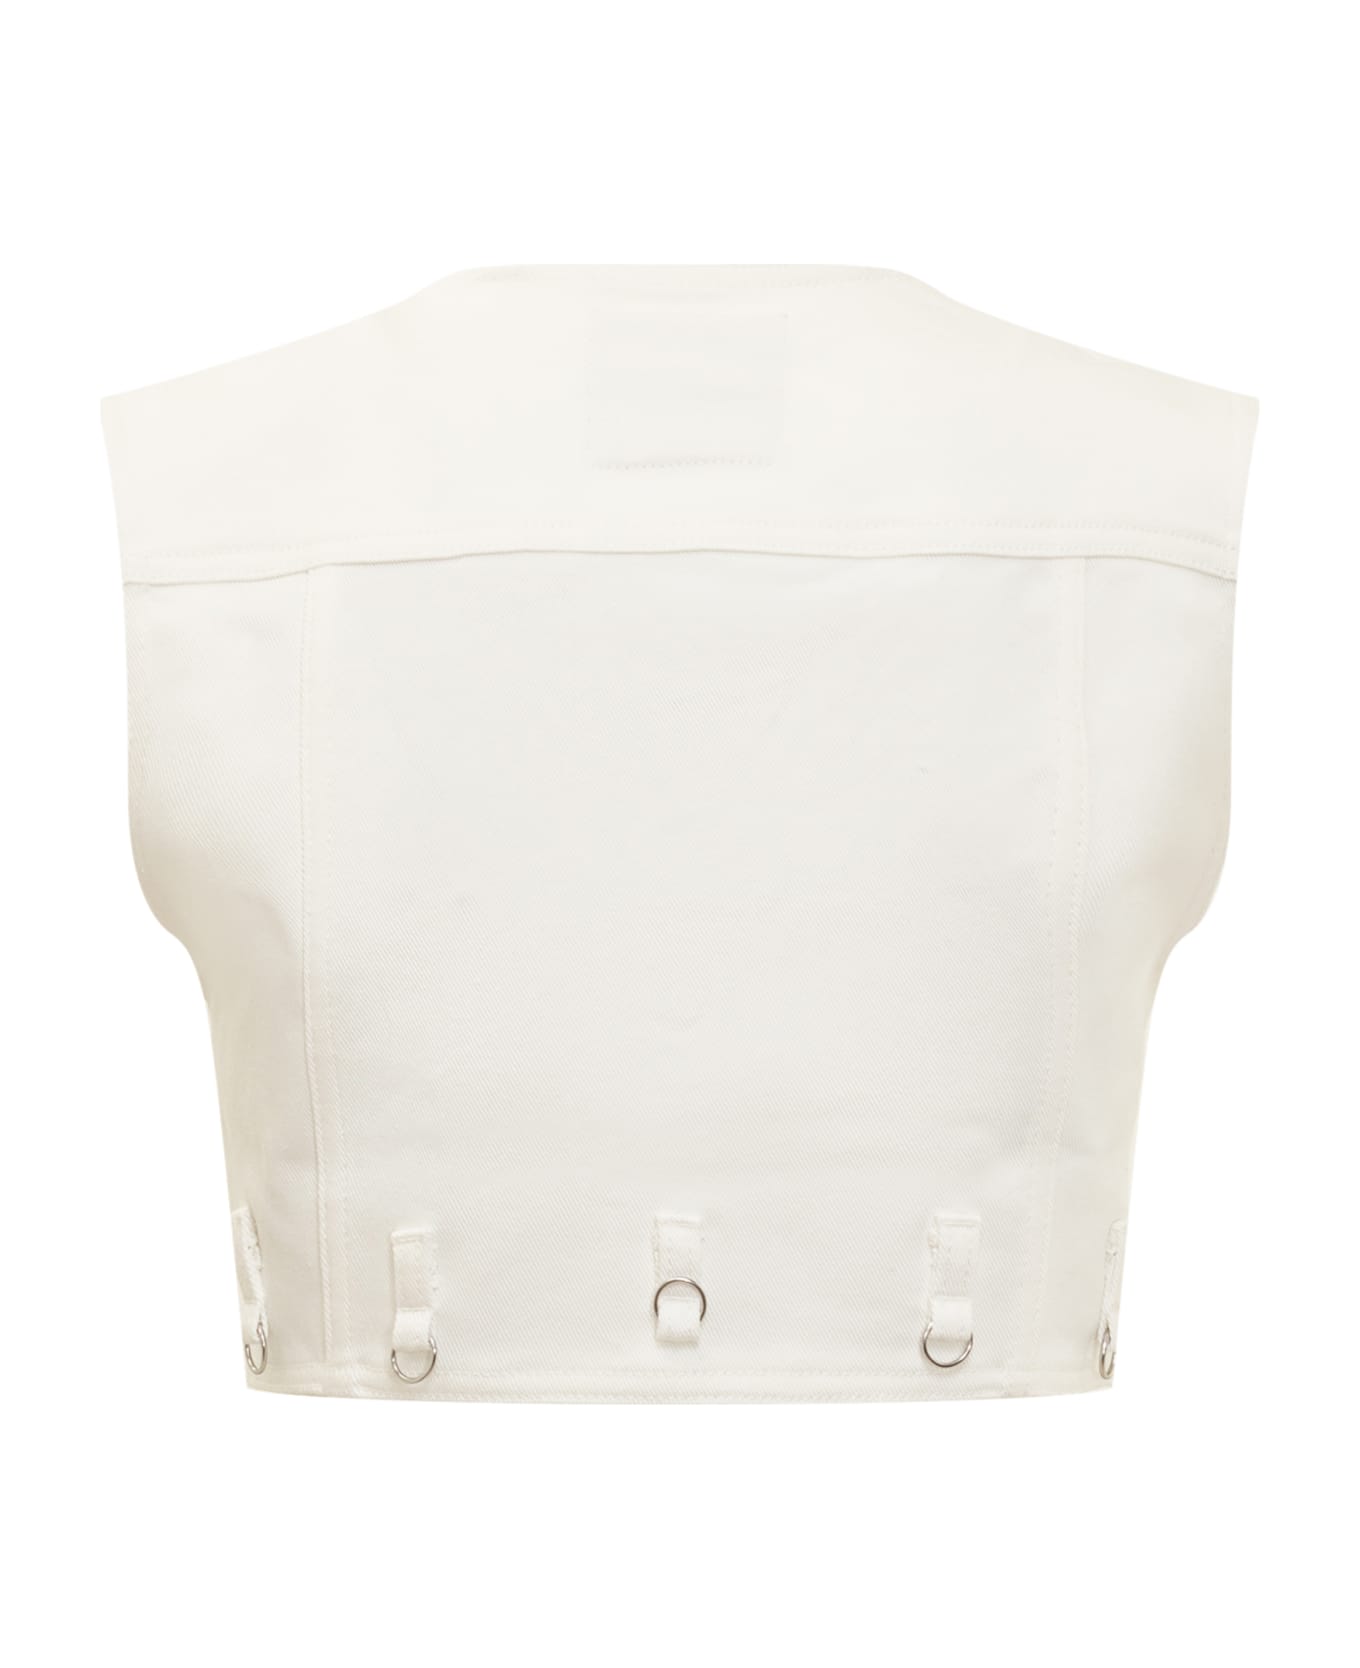 Courrèges Multiflex Denim Jacket - HERITAGE WHITE